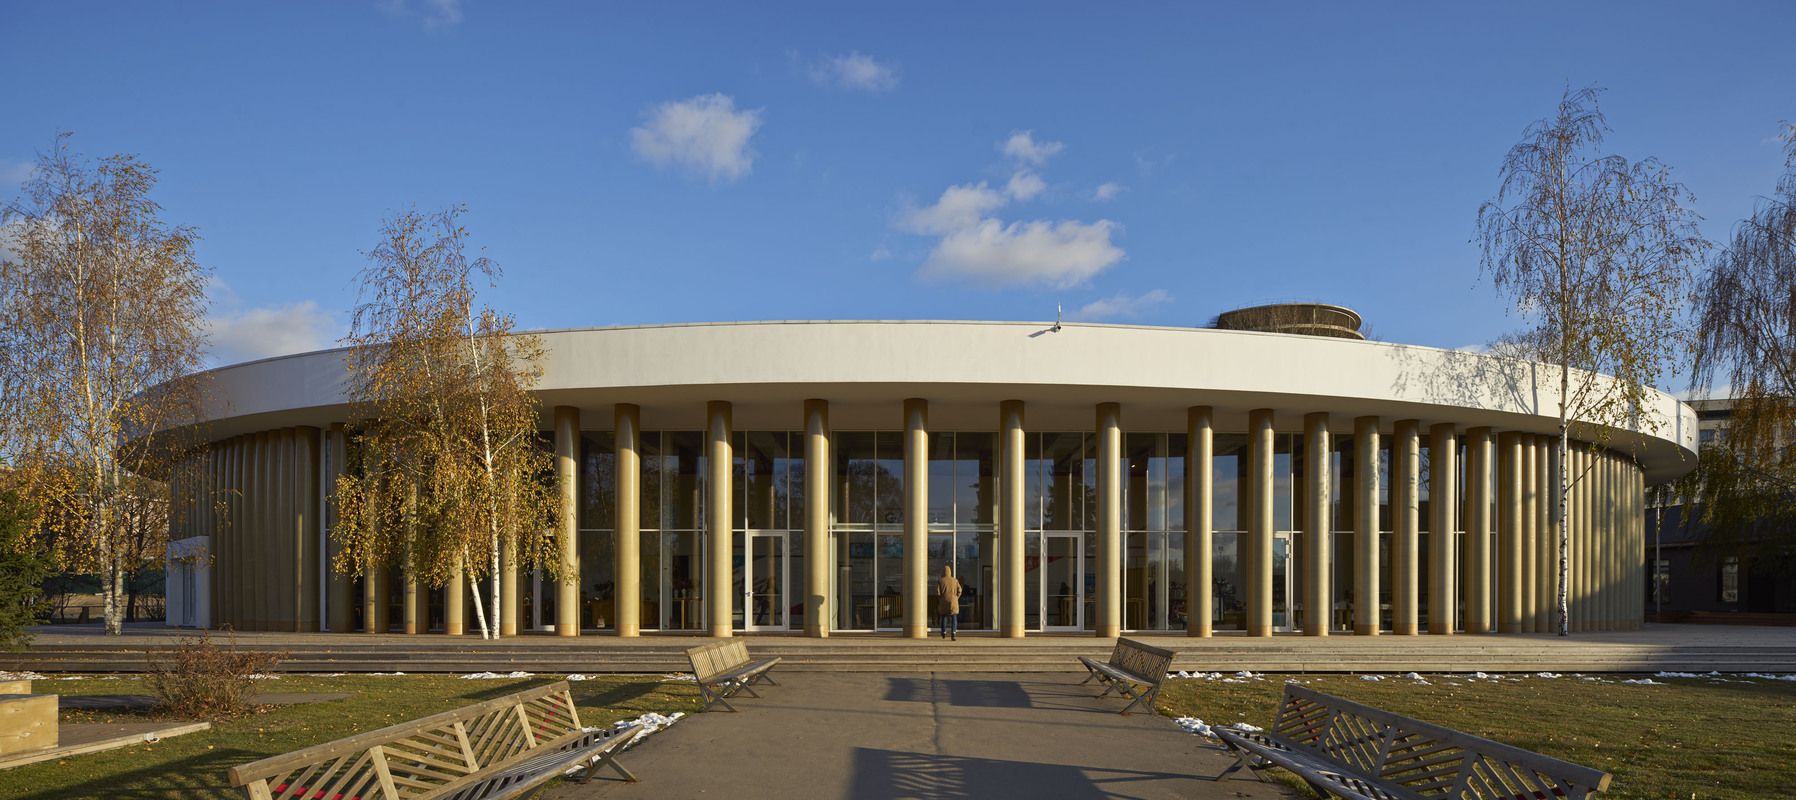 Павильон Музея «Гараж» в Парке Горького по проекту архитектора Шигеру Бана